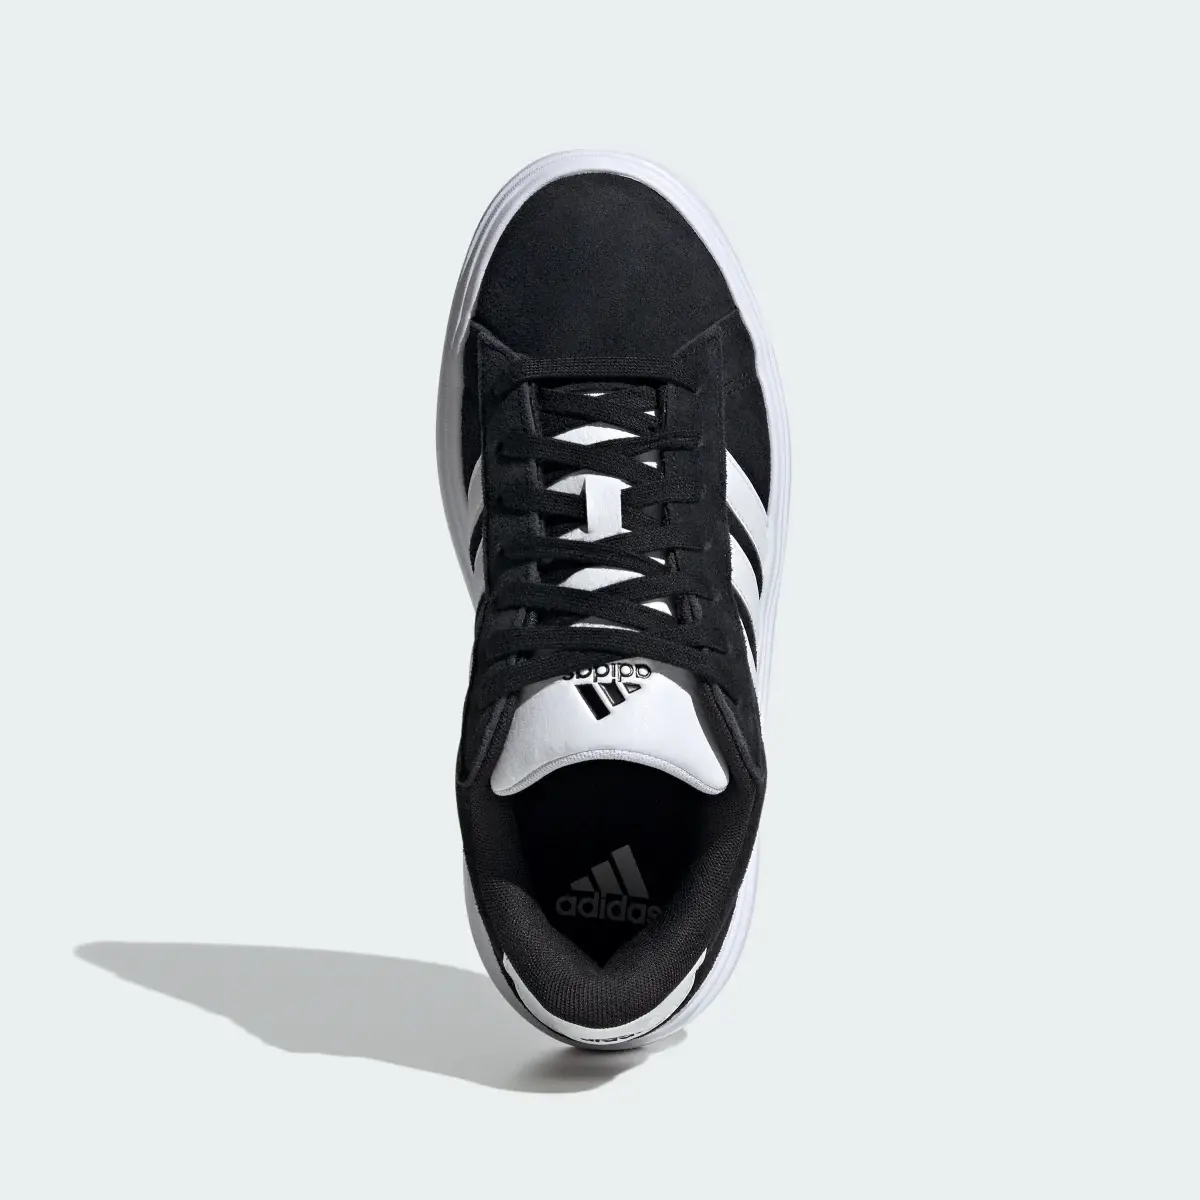 Adidas Grand Court Platform Shoes. 3